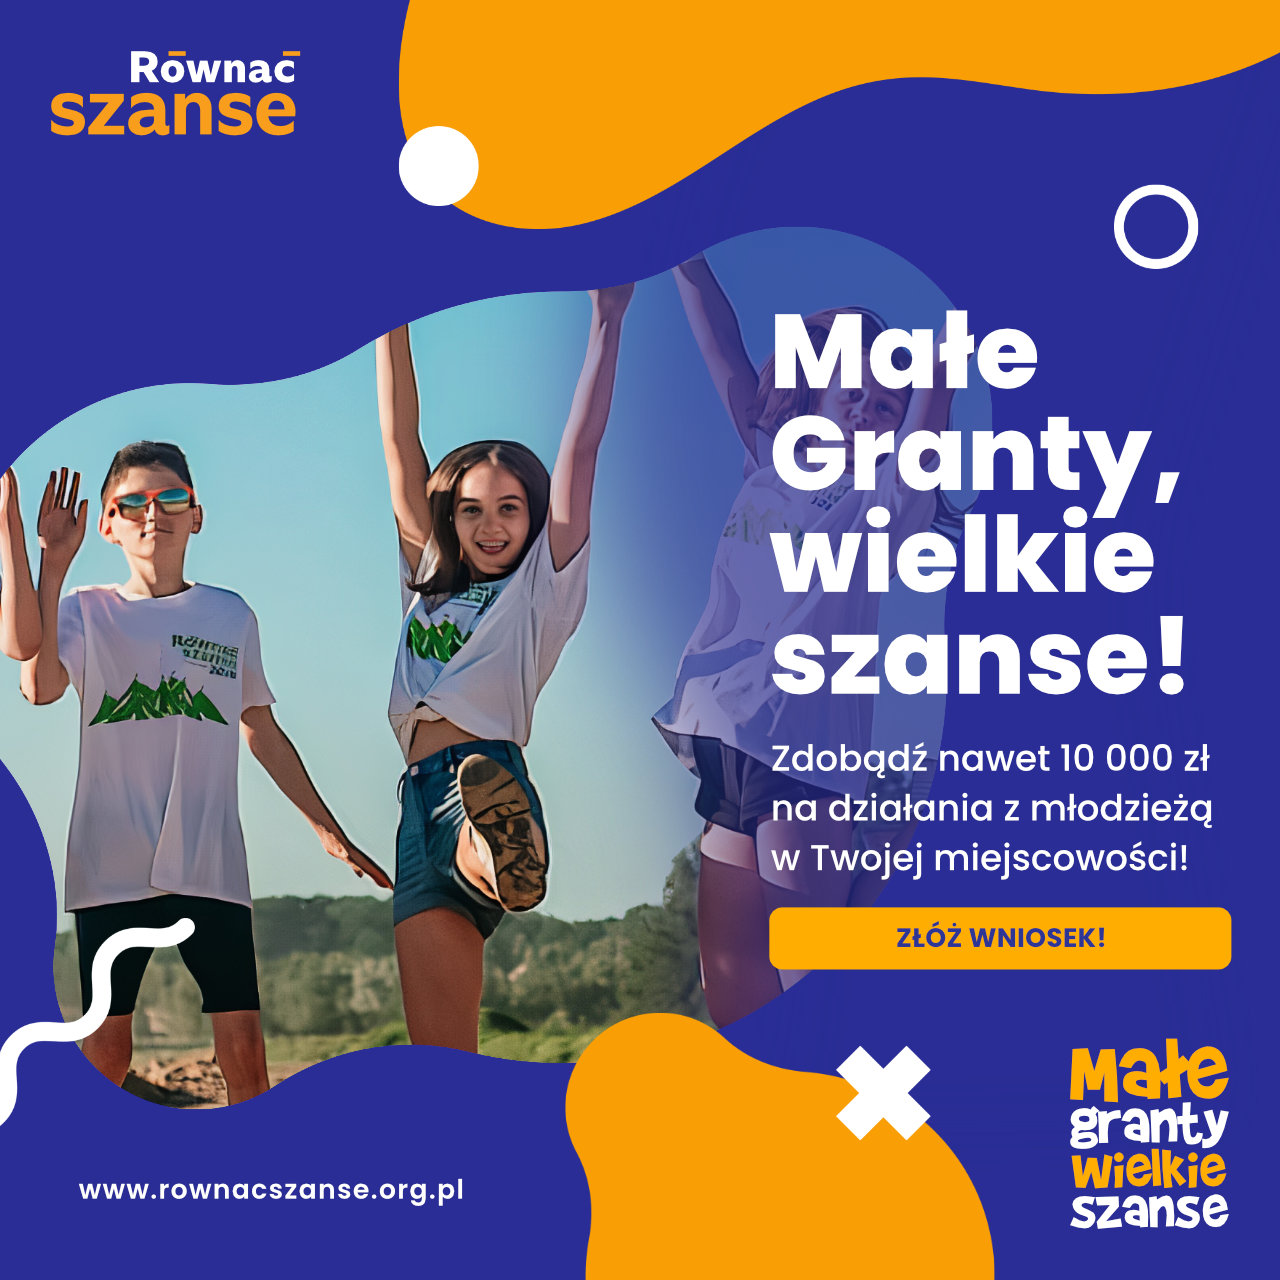 Program „Równać Szanse” ogłasza nabór wniosków w Konkursie Małe Granty!